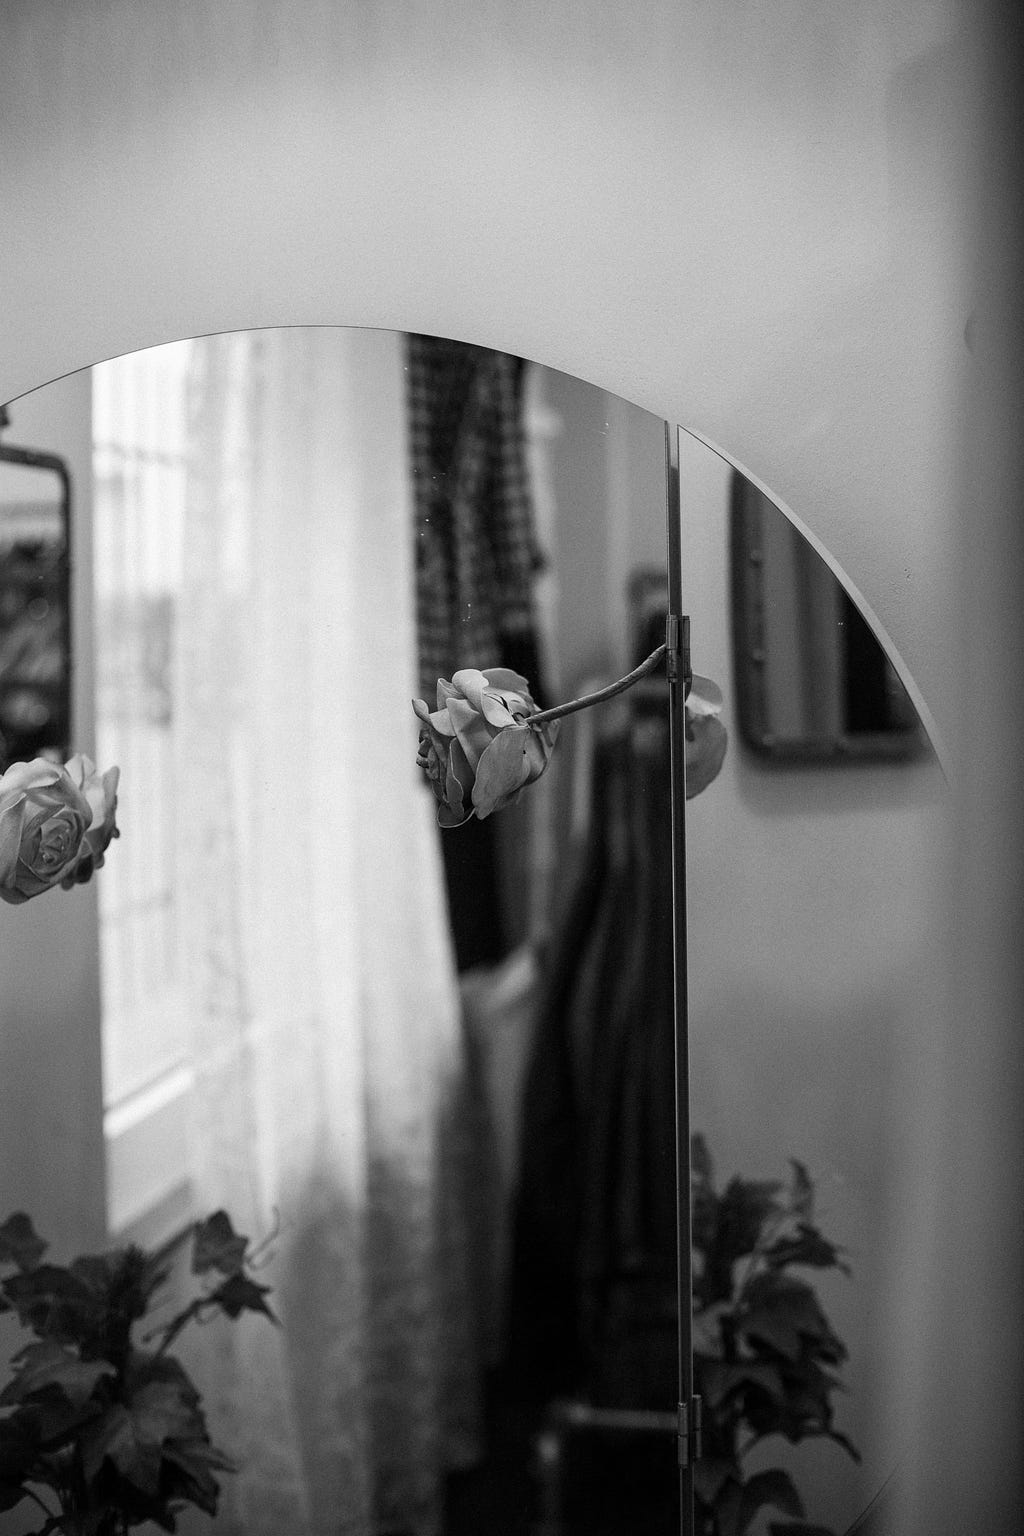 Fotografia em preto e branco de um espelho. No reflexo do espelho estão duas rosas.